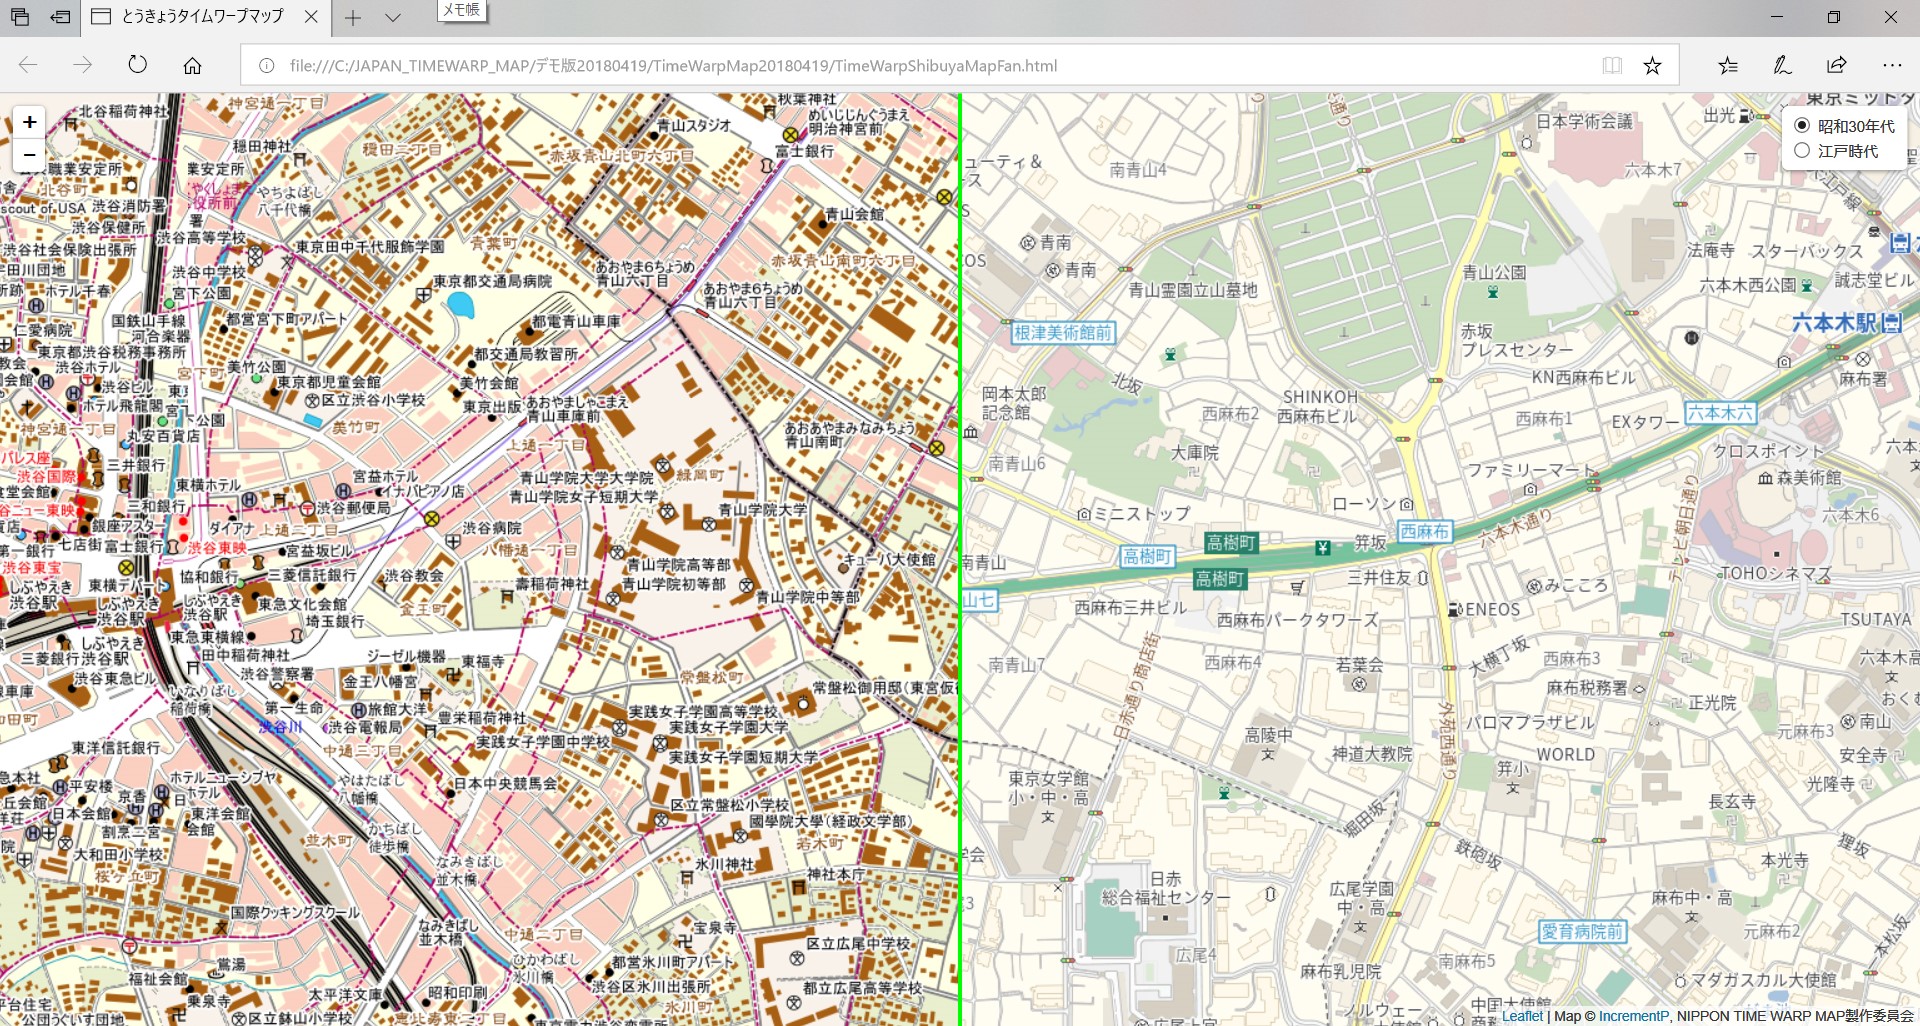 五輪直前 1962年の東京へ 地図でタイムワープ 株式会社地理情報開発 古地図の描き起こし プロジェクト 地図ウォッチ Internet Watch